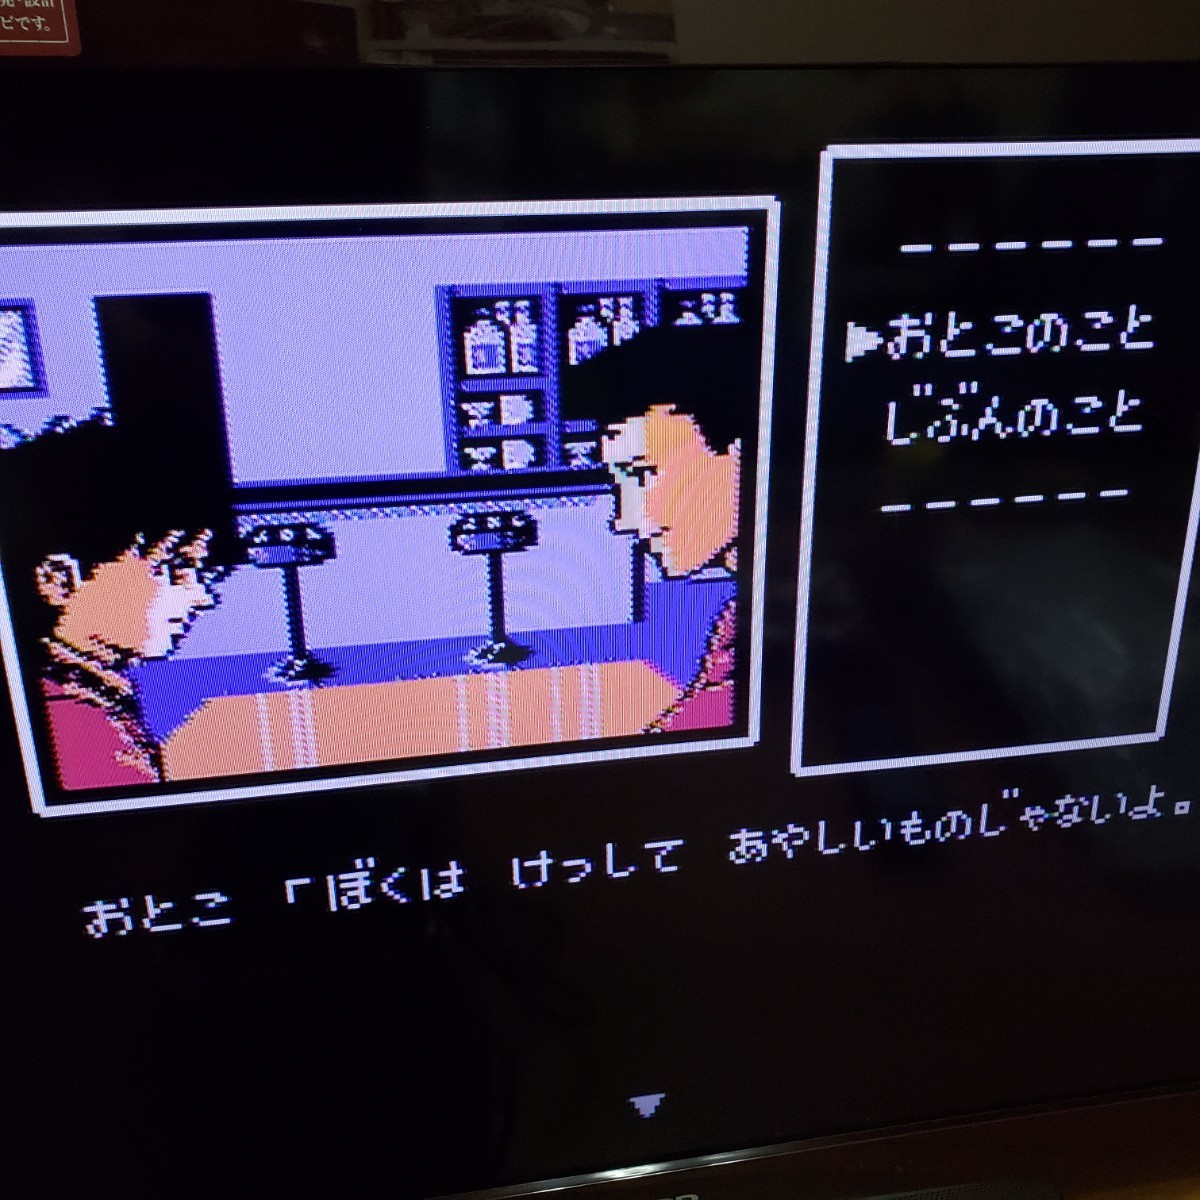 ディスクシステム ファミコン探偵倶楽部 うしろに立つ少女 前編　後編　2枚セットファミコンディスクシステム　